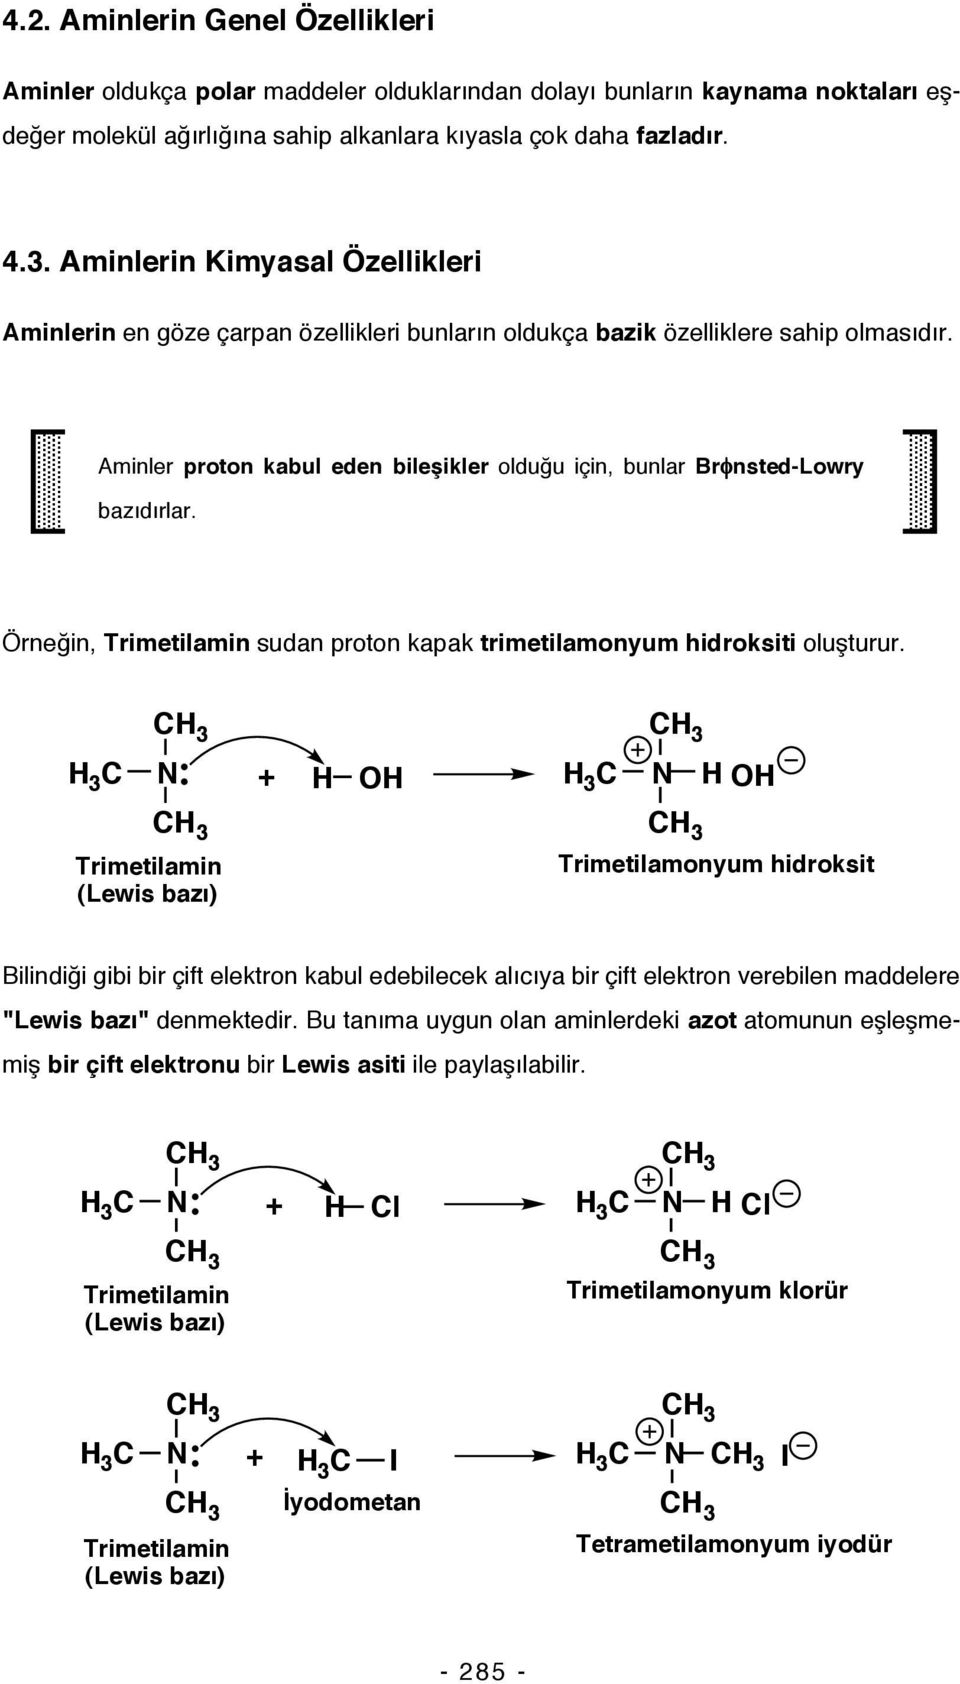 Aminler proton kabul eden bileşikler olduğu için, bunlar Brφnsted-Lowry bazıdırlar. Örneğin, Trimetilamin sudan proton kapak trimetilamonyum hidroksiti oluşturur.